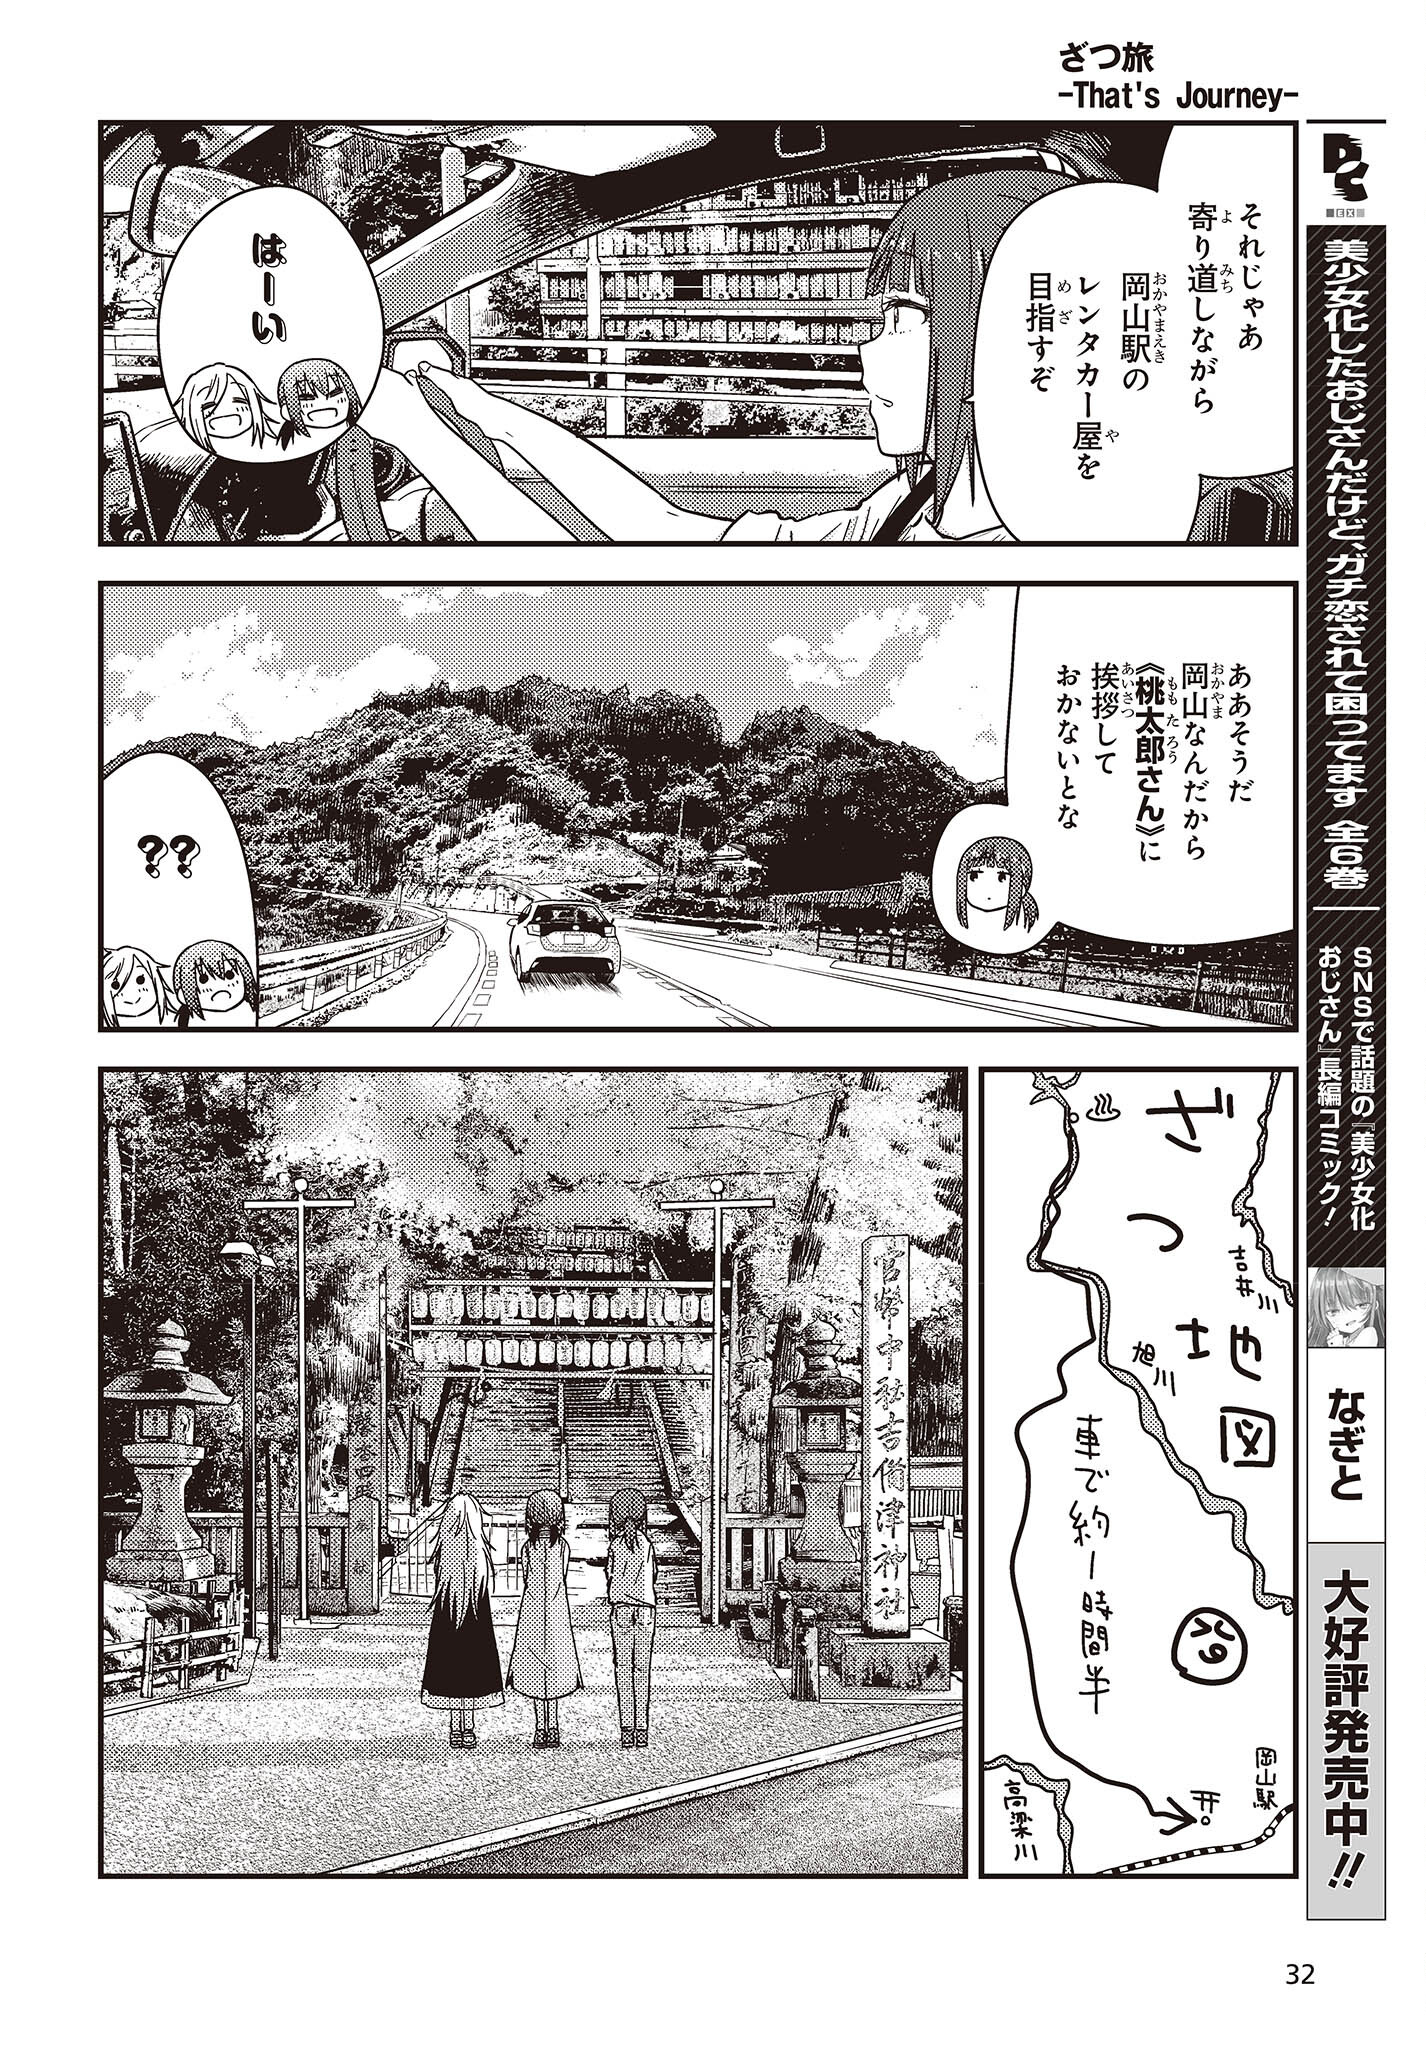 ざつ旅-That’s Journey- 第33話 - Page 26